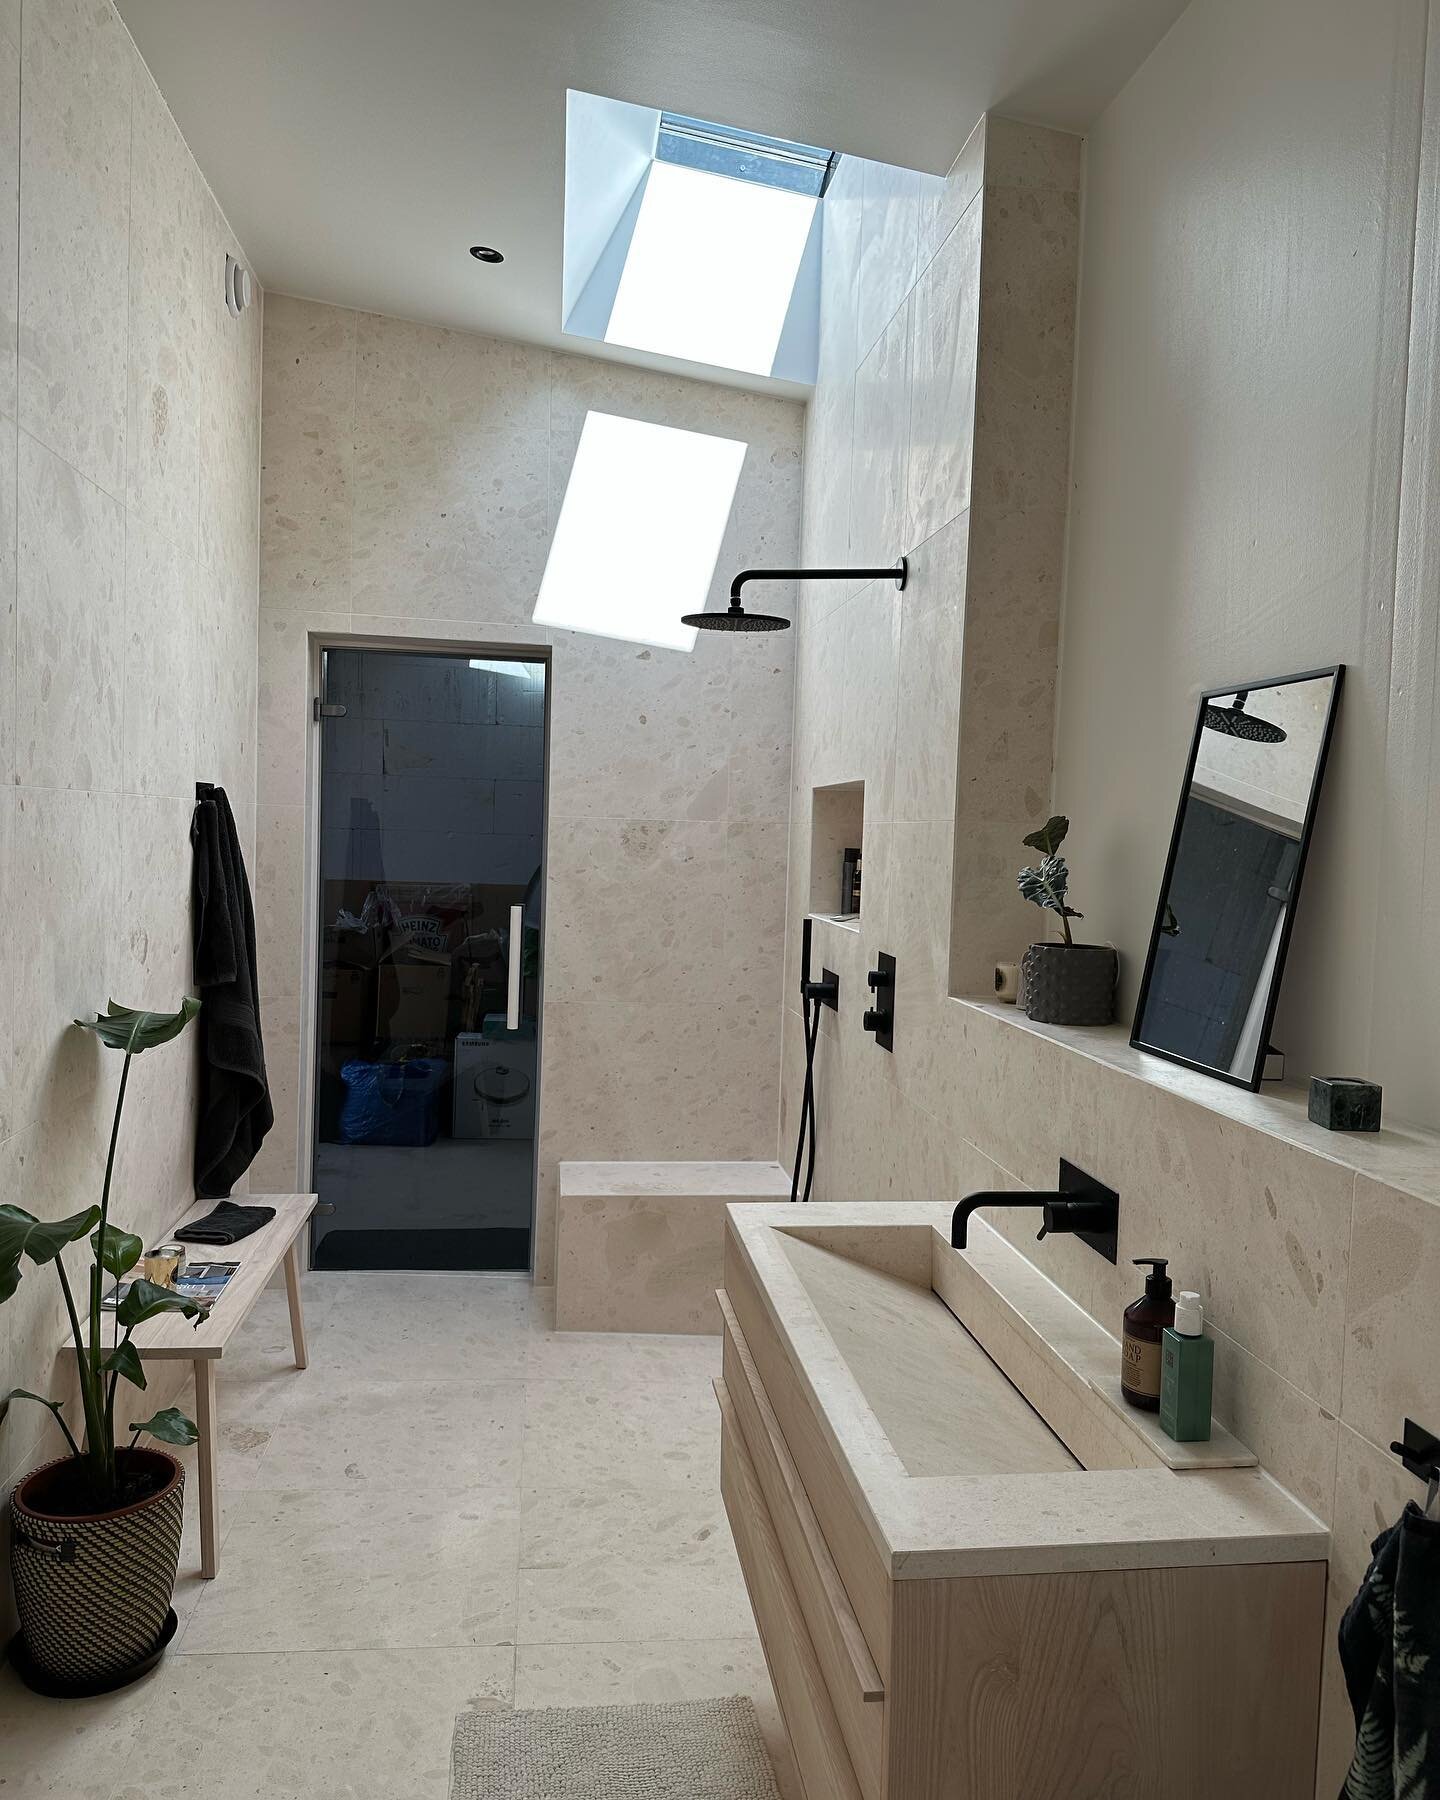 BoArt. Projekt villa RK. Underbart badrum med harmonisk ljus spansk sten. Ljuset faller fint in genom takf&ouml;nstret. Ett tillval som kunden valde i slutet av projektet. #boartsvenskadesignhem